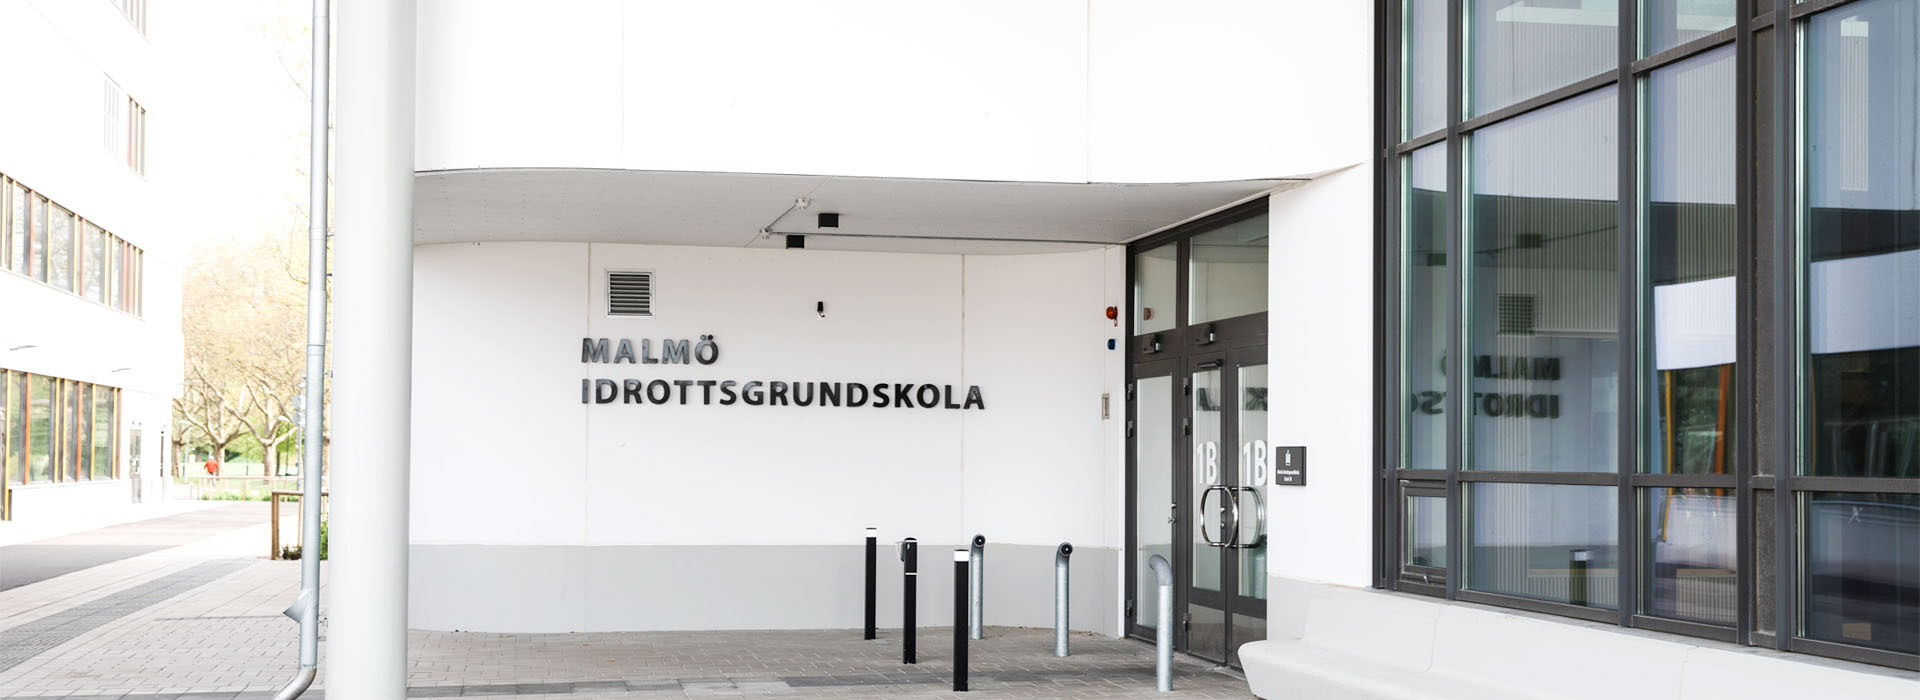 Malmö Idrottsgrundskola ligger vid Stadionområdet och samarbetar
med några av Malmös ledande idrottsföreningar.